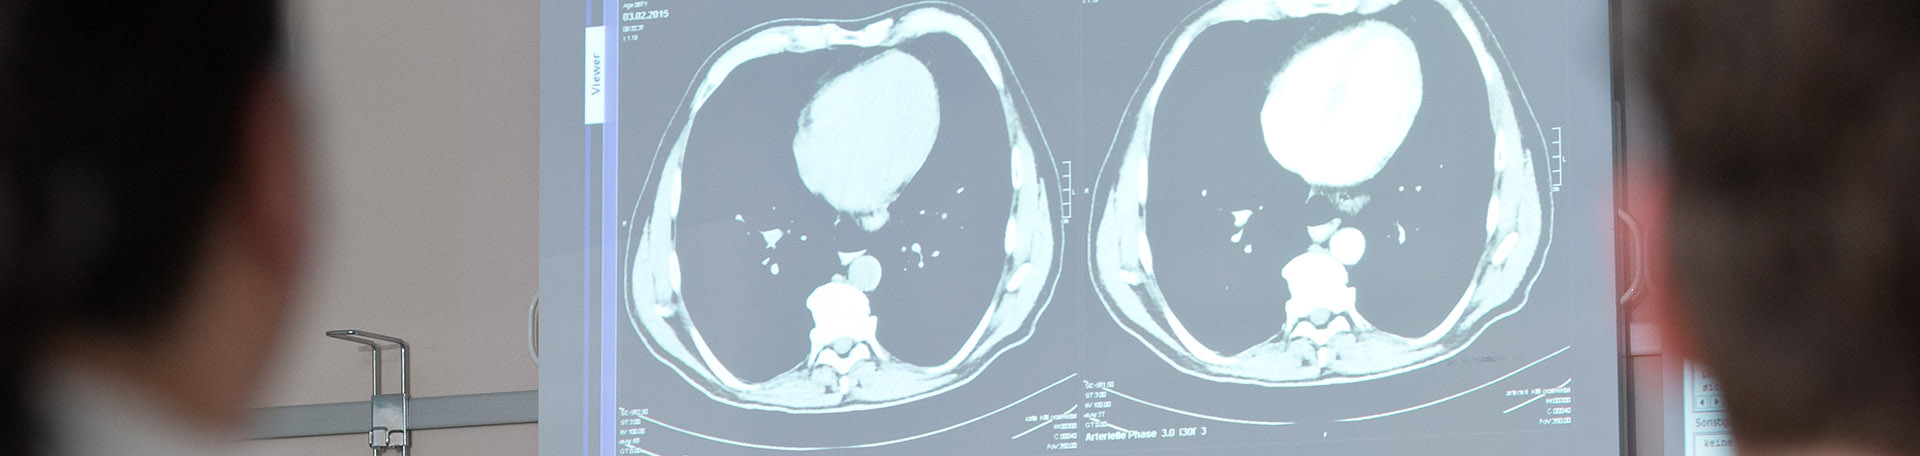 Illustrationsbild Ärztliche Behandlung: Eine Aufnahme eines Tumors auf einem Monitor